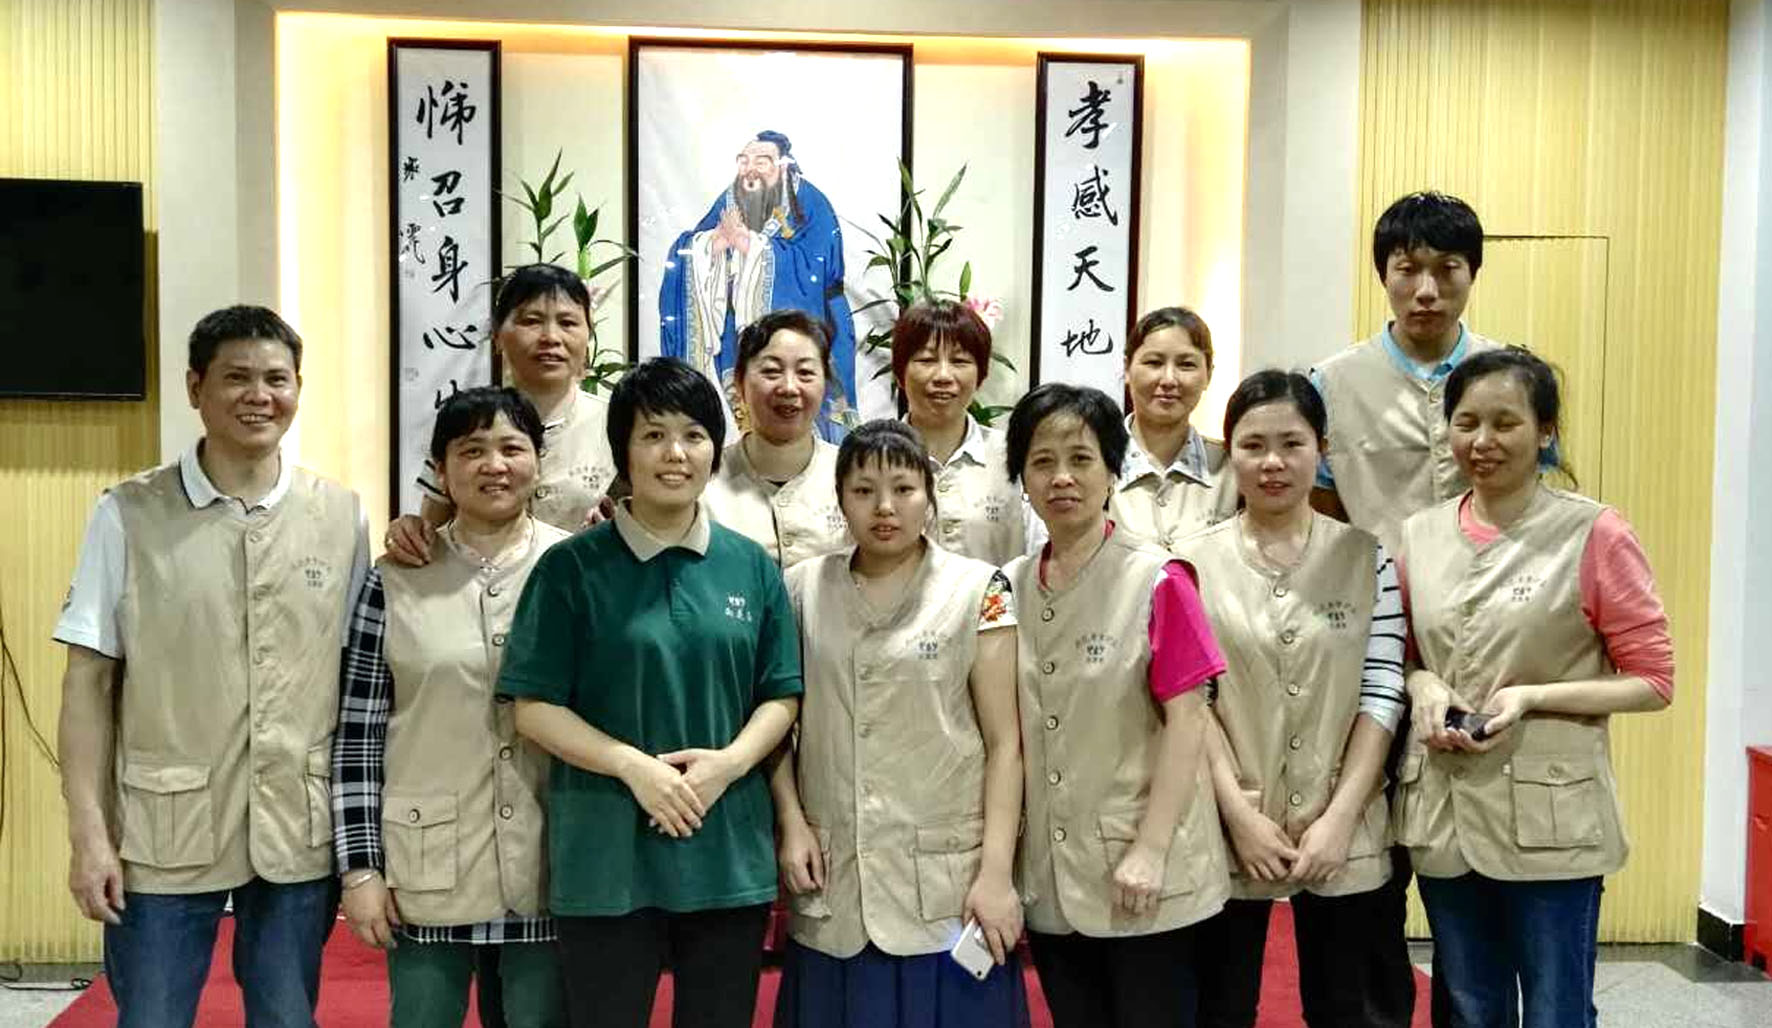 Lyheng Volunteers